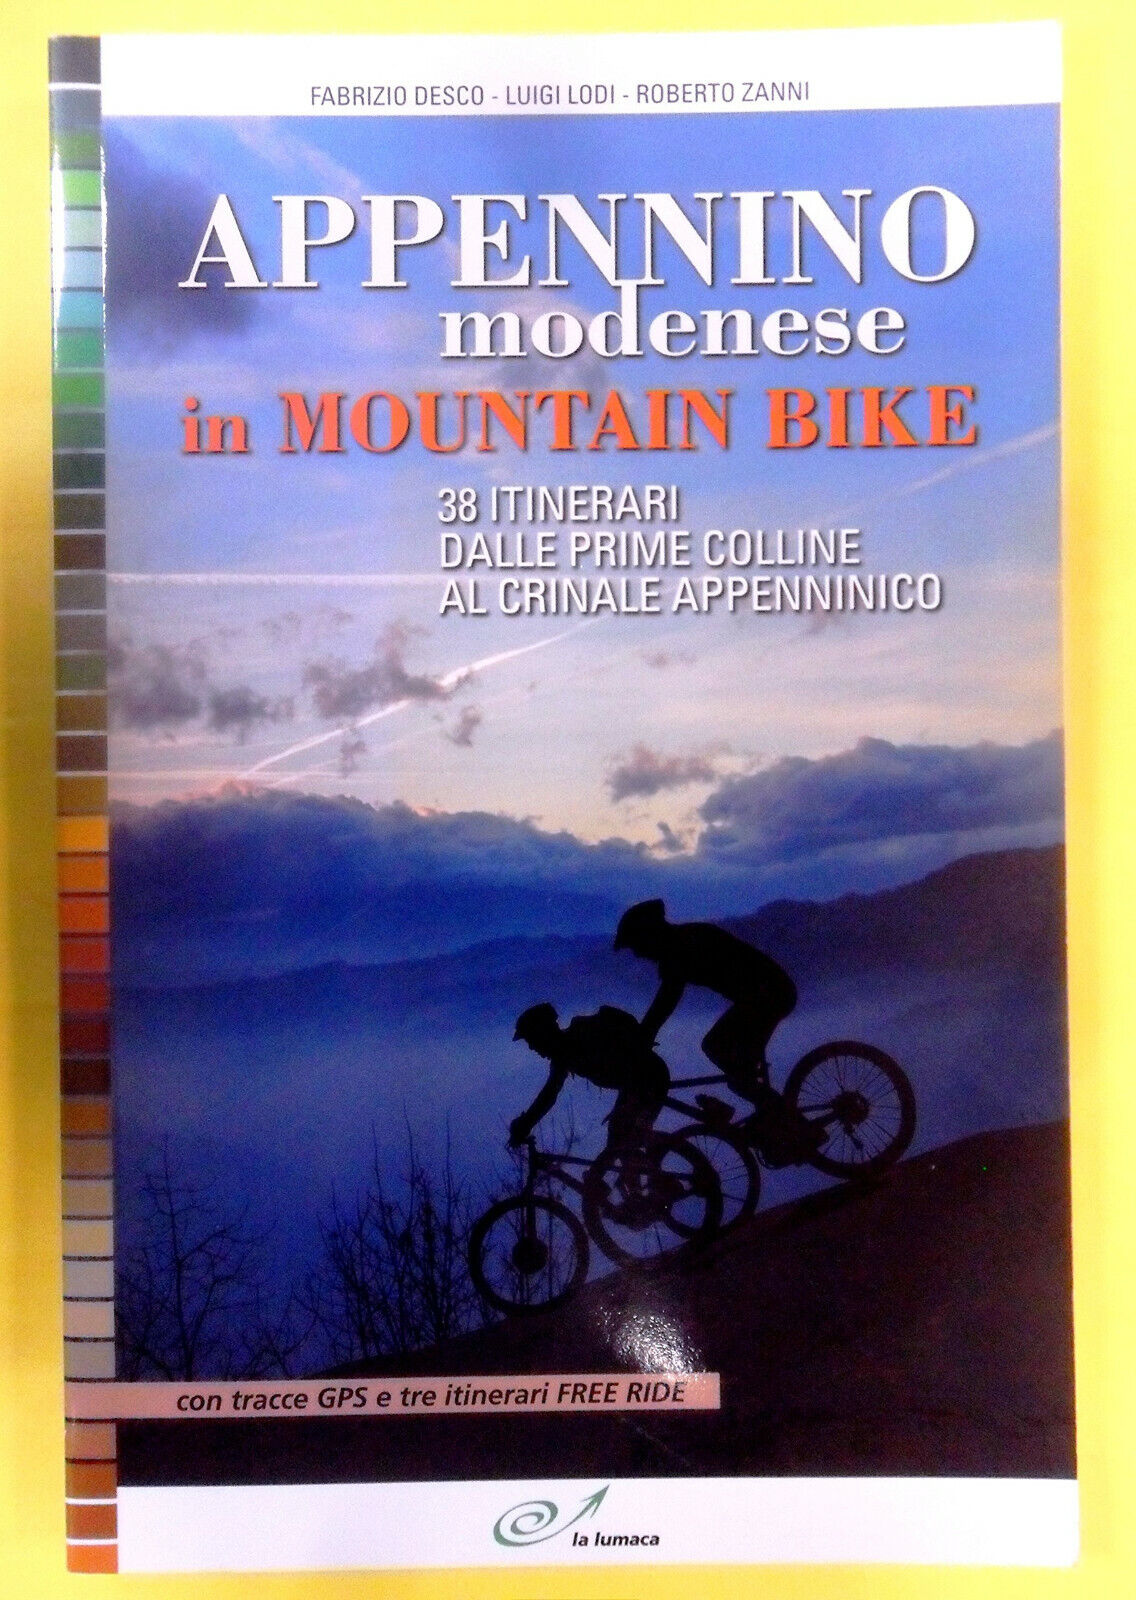 Appennino modenese in mountain bike - La Lumaca - 2012